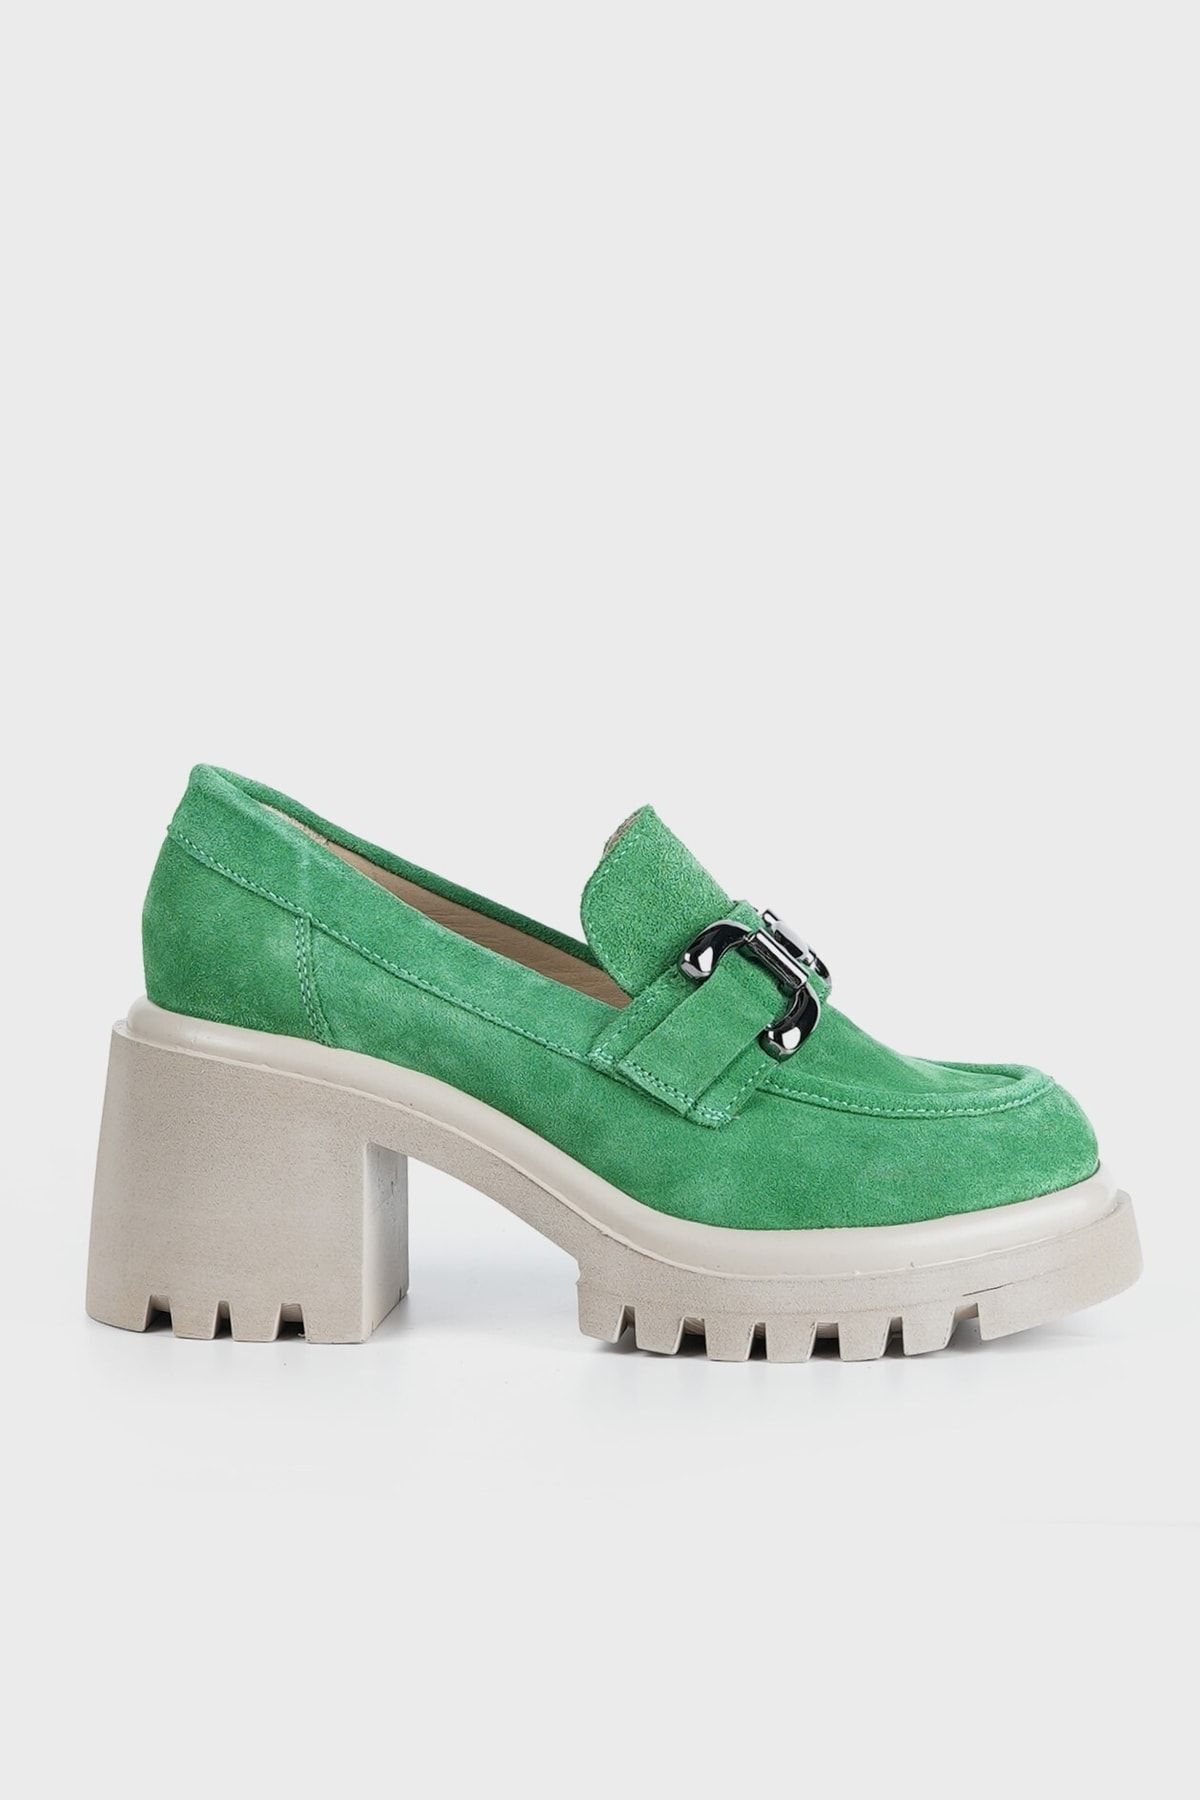 TUNAELLİ Kadın Yeşil Süet Hakiki Deri Zincirli Loafer Ayakkabı